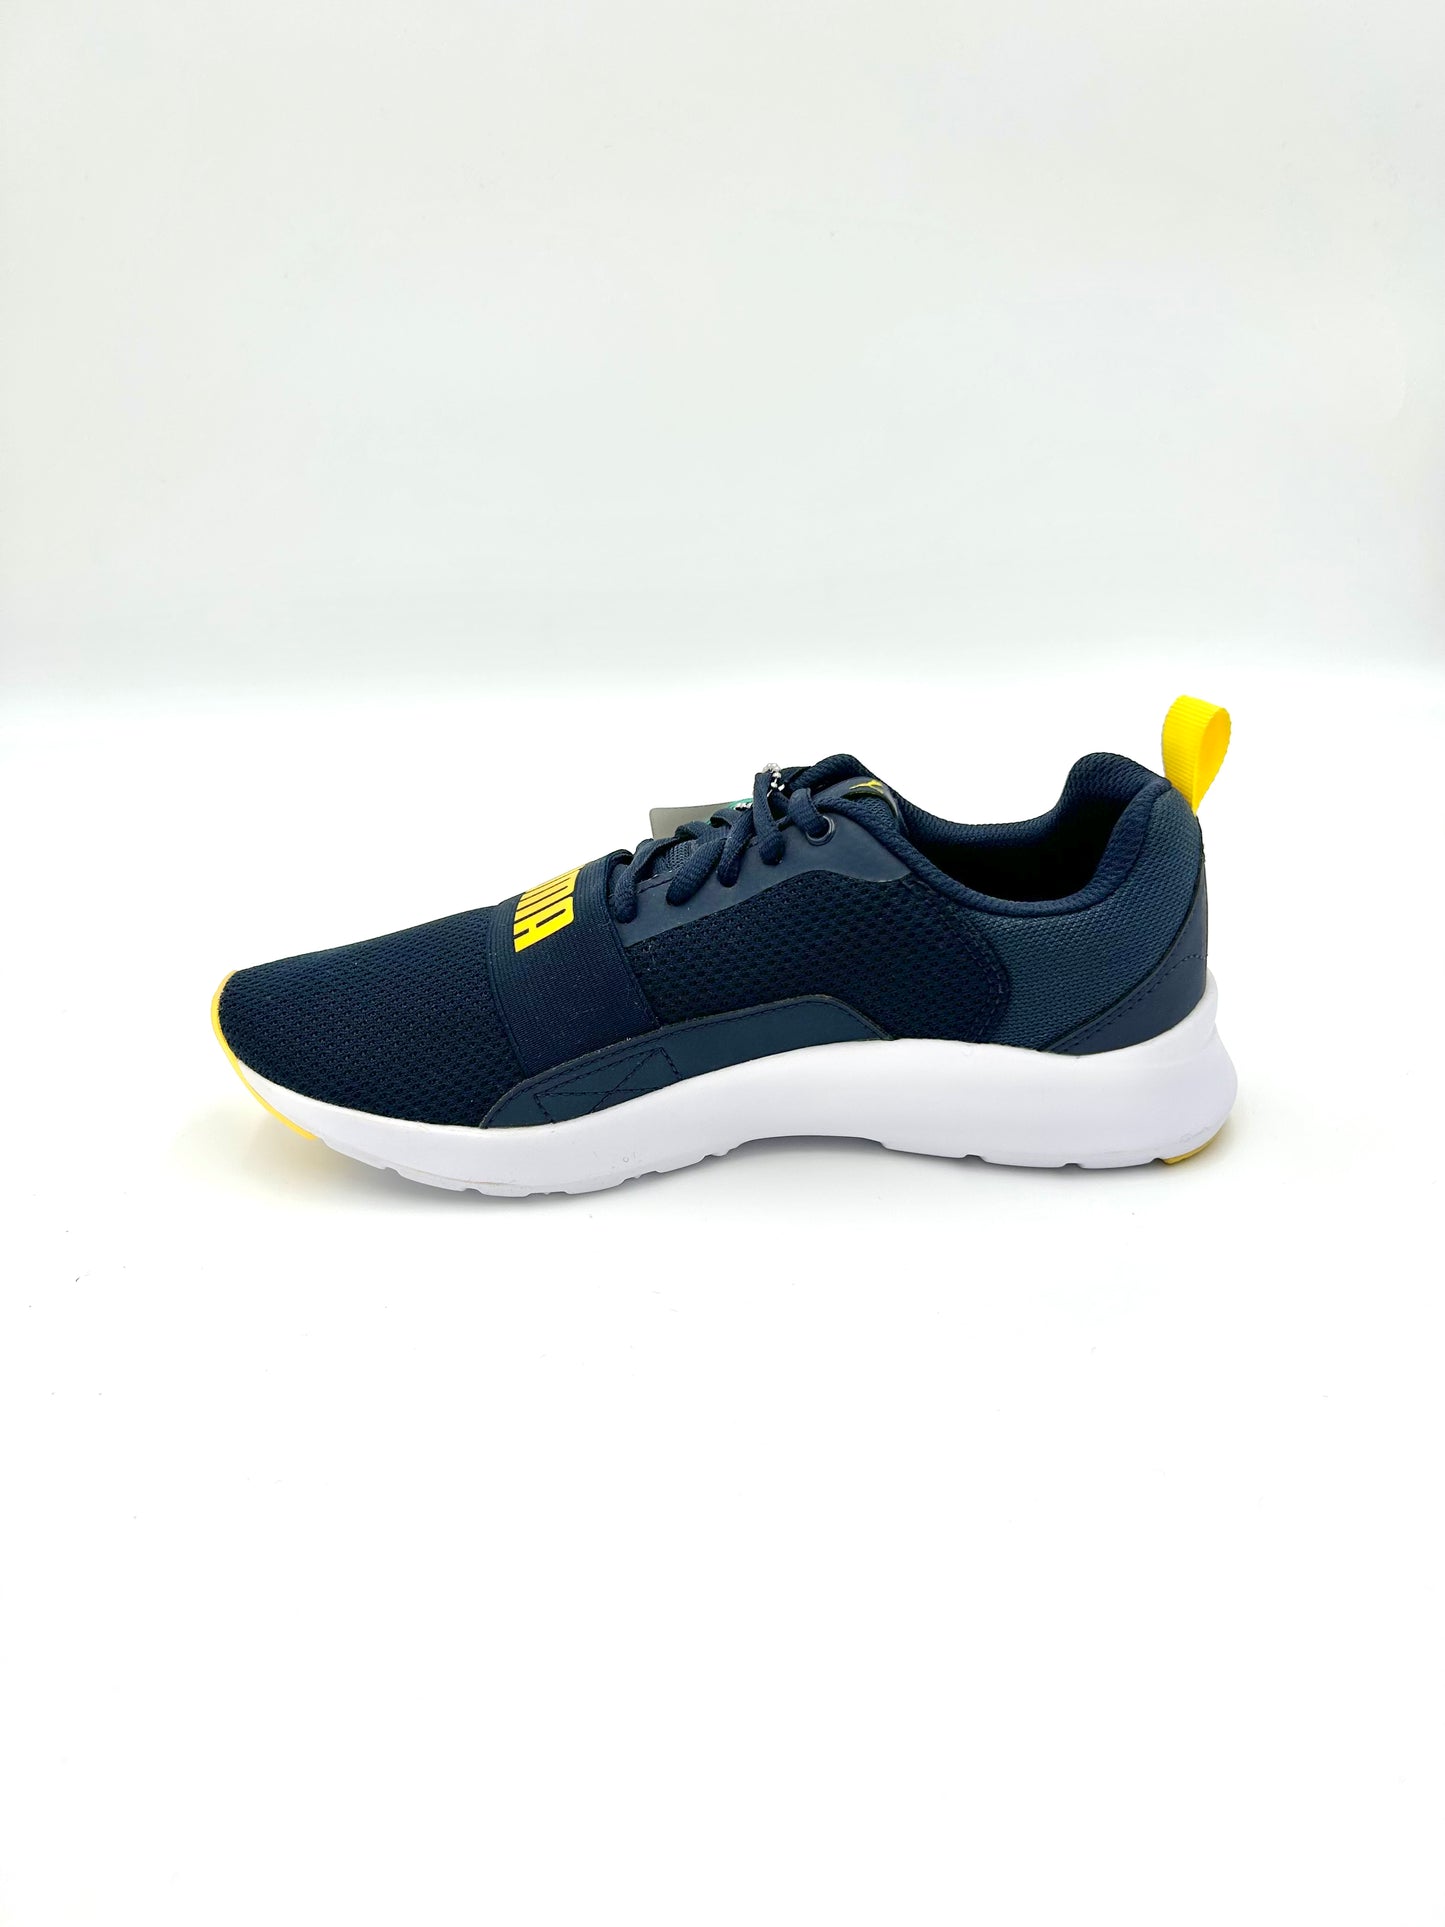 Puma Sneakers wired- blue - Puma